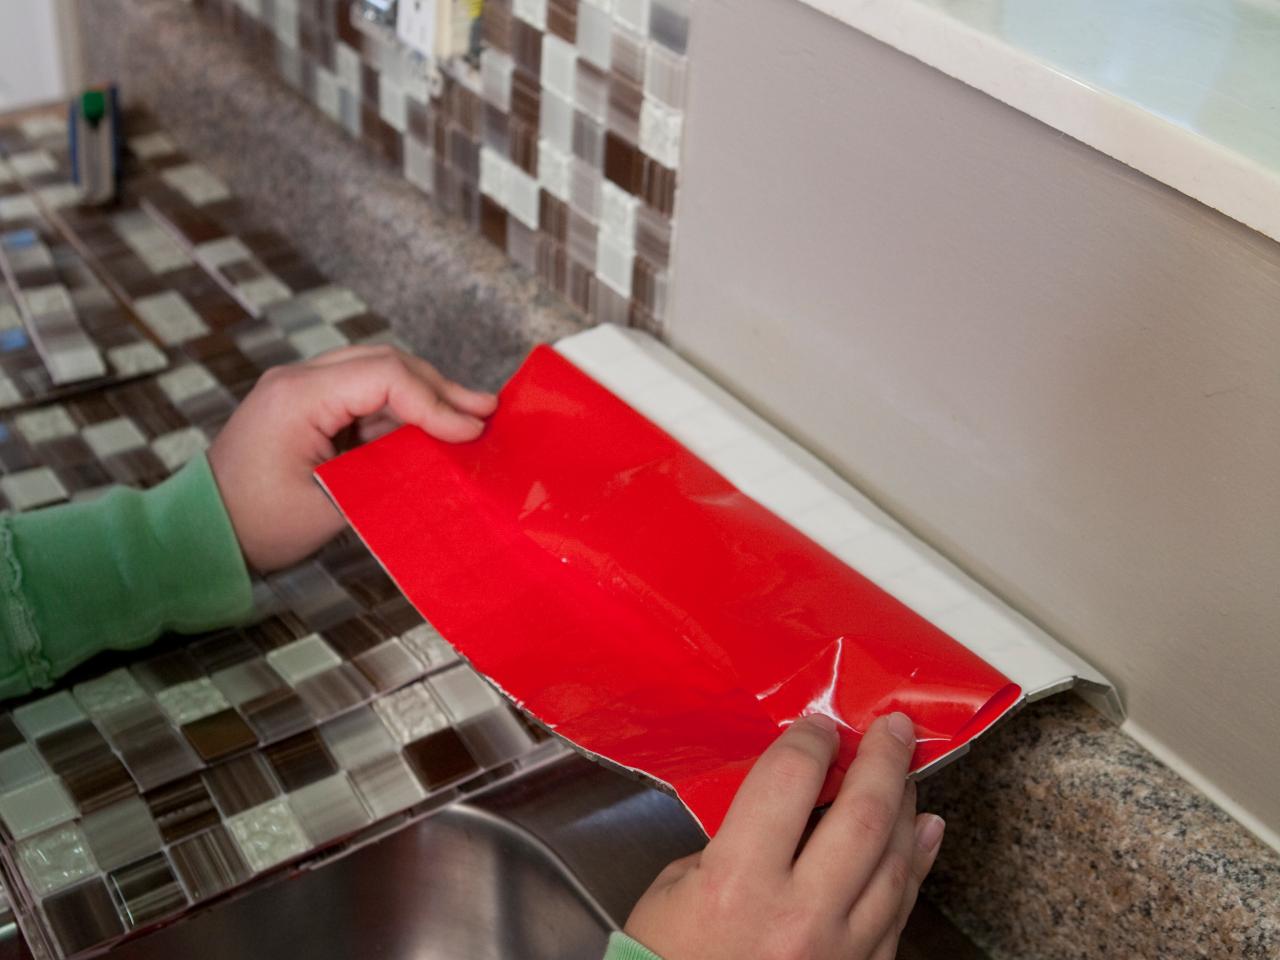 How To Install A Backsplash Tos Diy, Backsplash Tile Kit